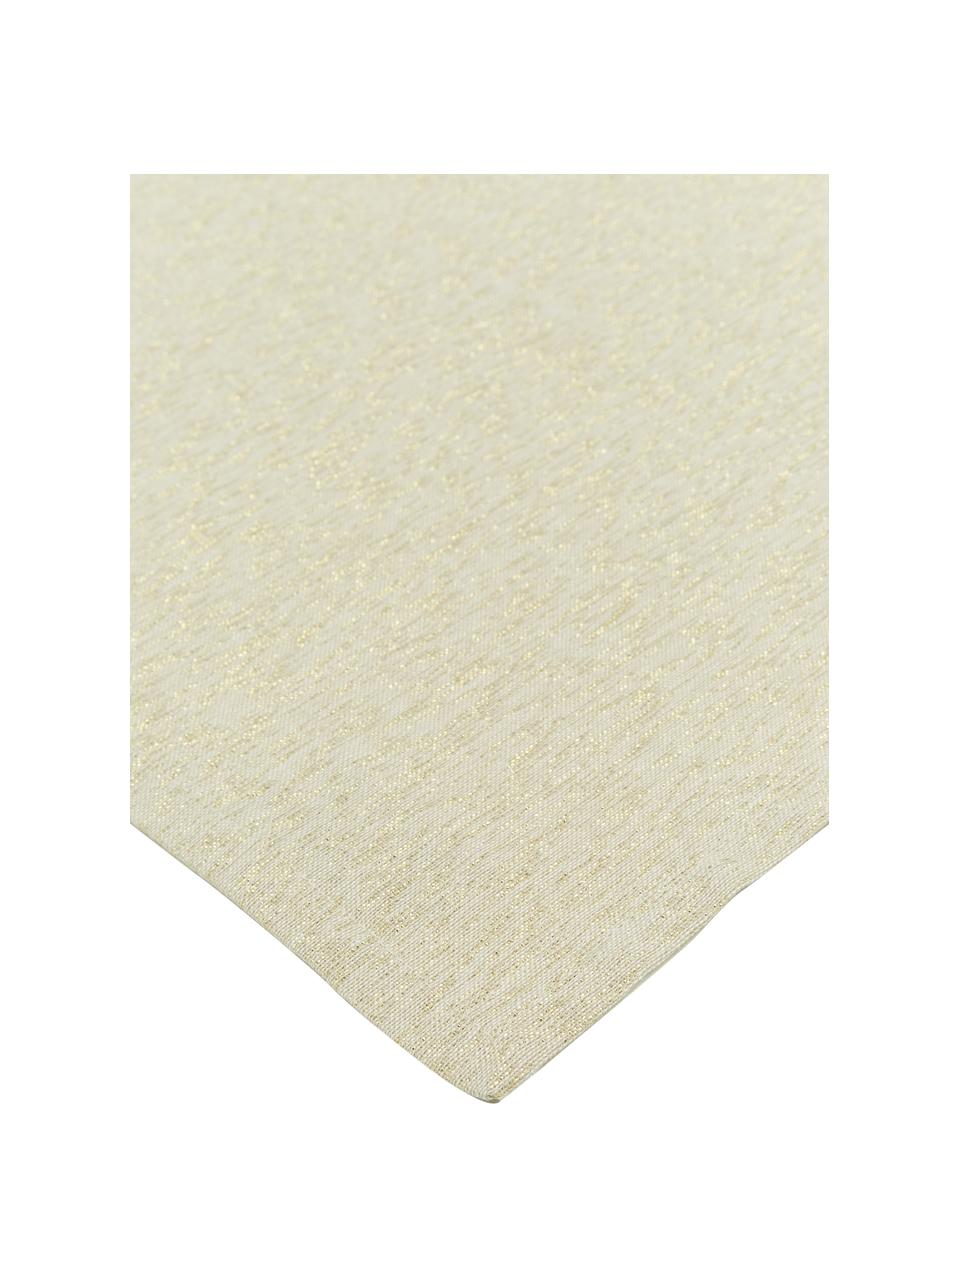 Baumwoll-Servietten Vialactea mit Lurex-Faden, 2 Stück, Baumwolle, Lurex, Hellbeige, Goldfarben, B 40 x L 40 cm